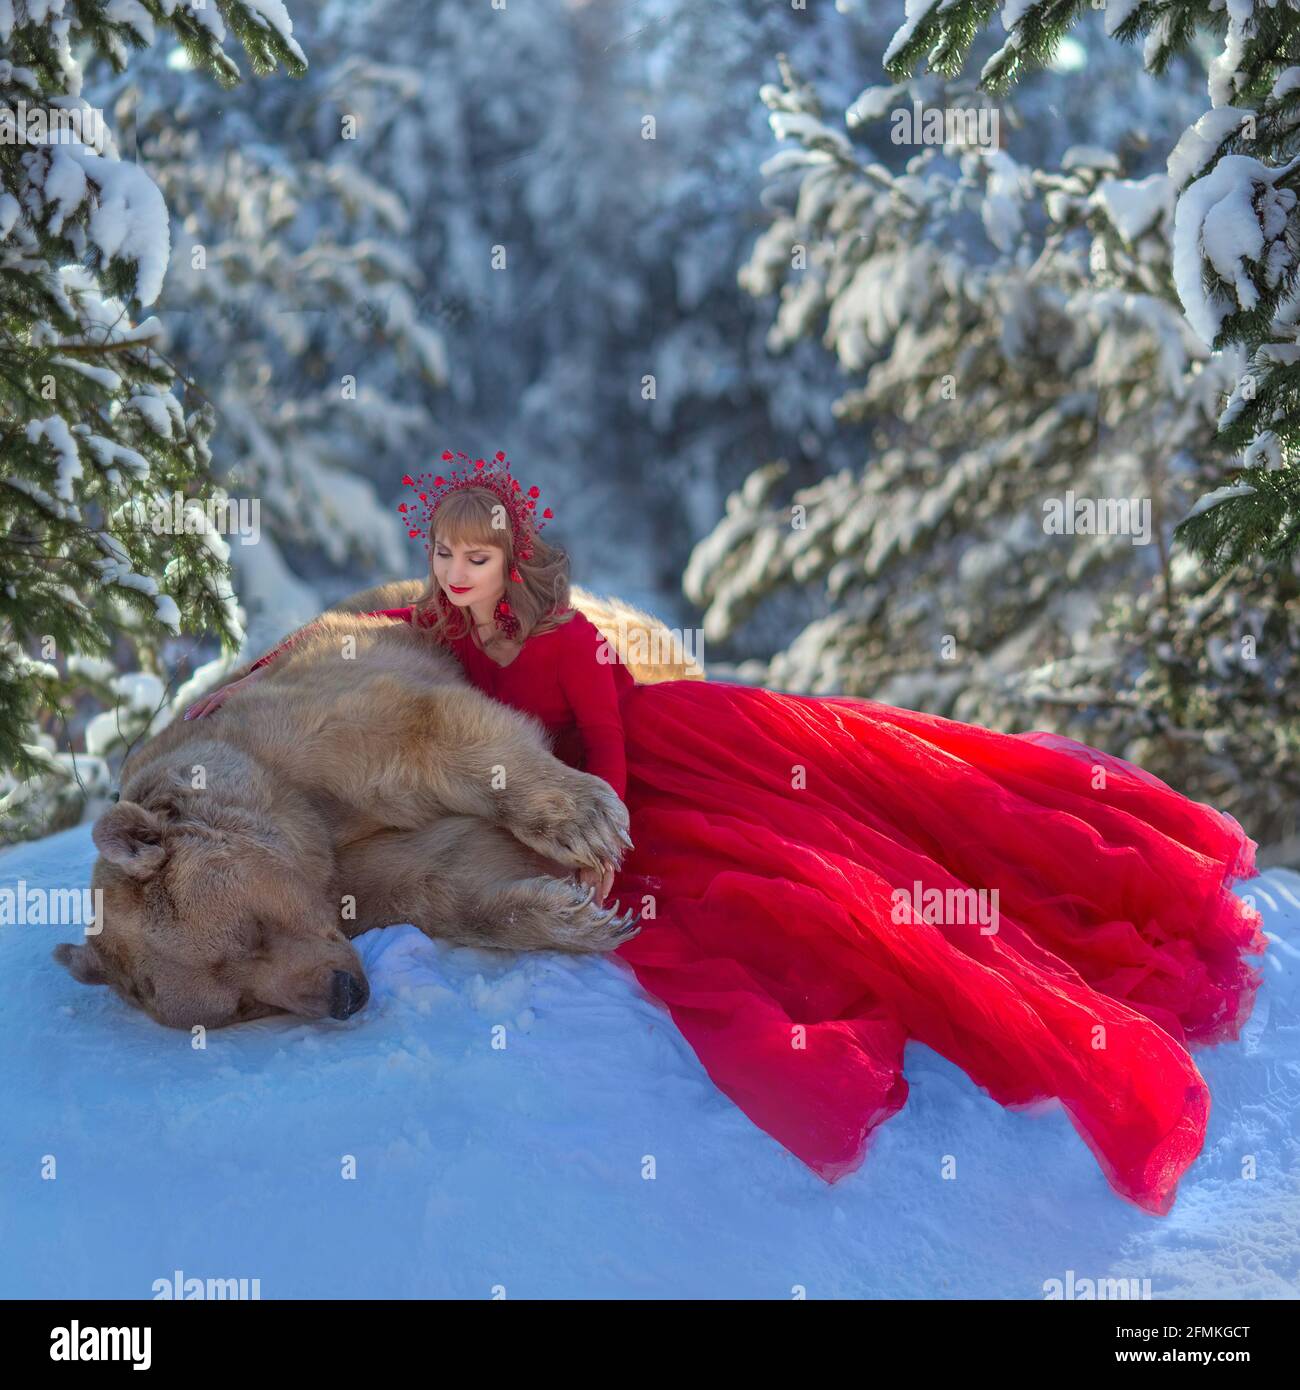 Stepan genießt einen Schlummer im Schnee. MOSKAU, RUSSLAND: TREFFEN SIE DEN echten Bären, der von seiner Mutter verlassen und von Menschen aufgezogen wurde, die jetzt eine blühende Karriere haben Stockfoto